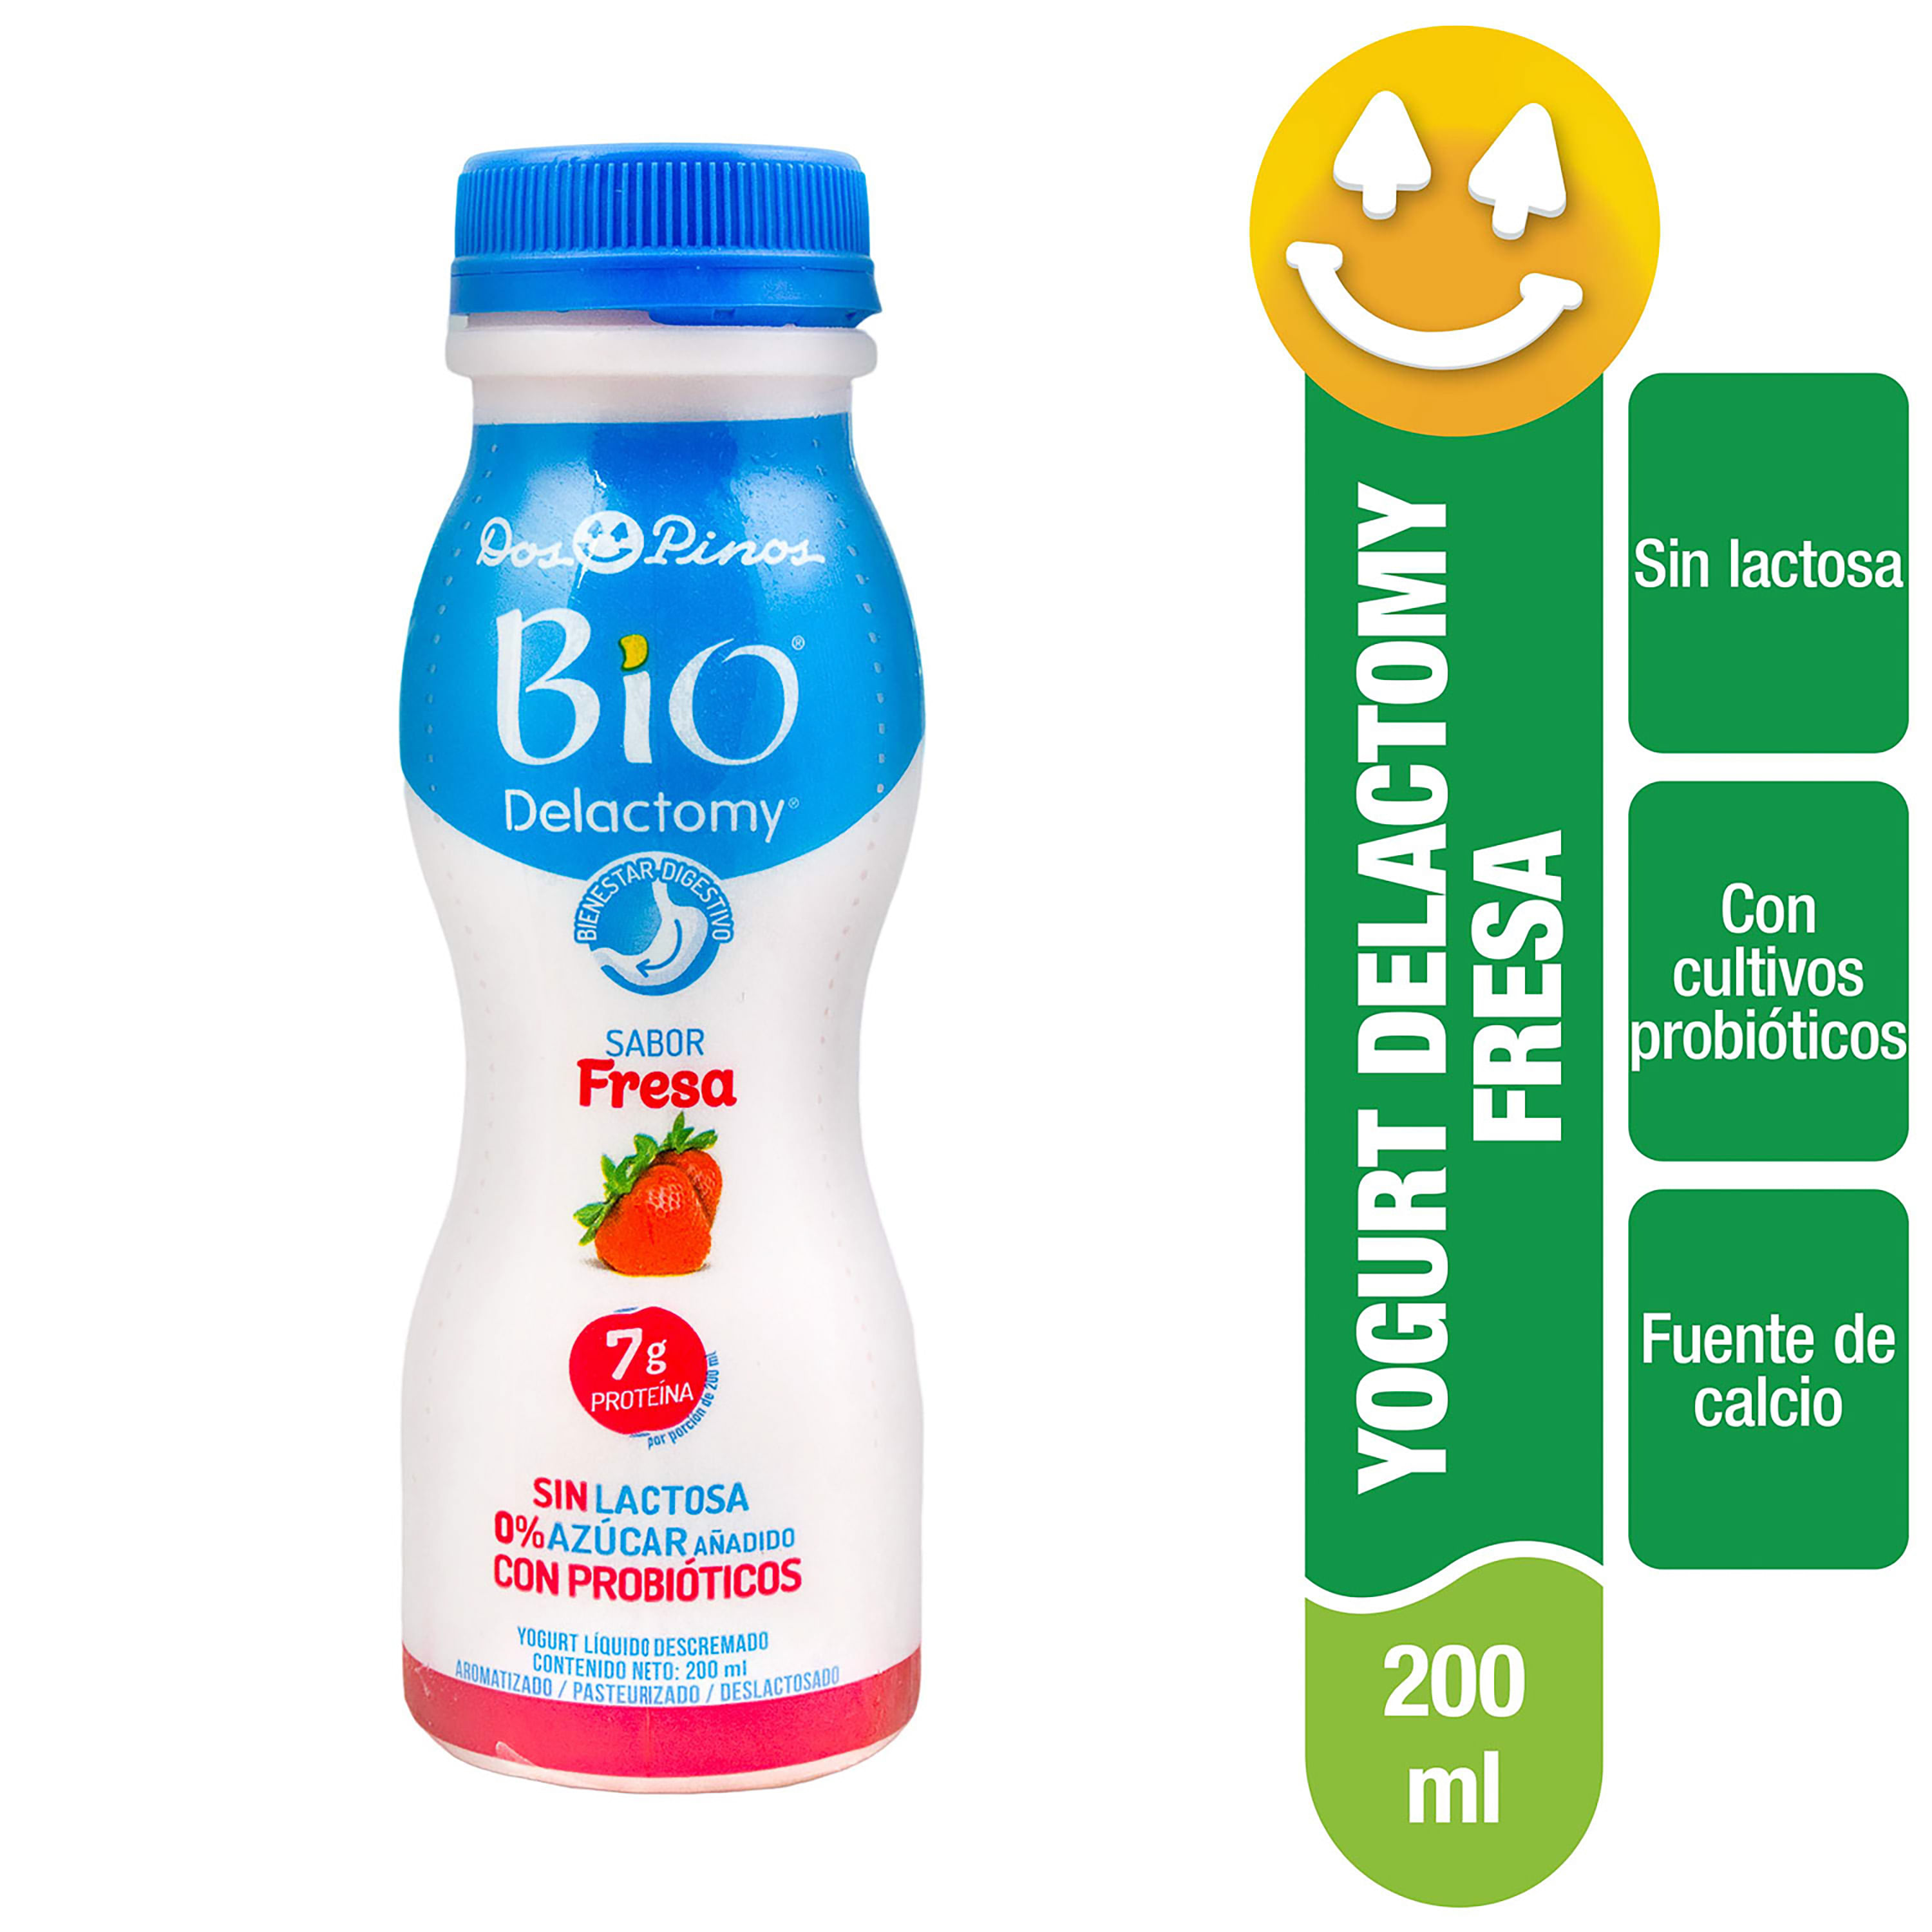 Yogurt-L-quido-Marca-Dos-Pinos-Bio-Delactomy-Sabor-Fresa-Descremado-Sin-Lactosa-0-Az-car-A-adido-Con-Probi-tico-200ml-1-14939